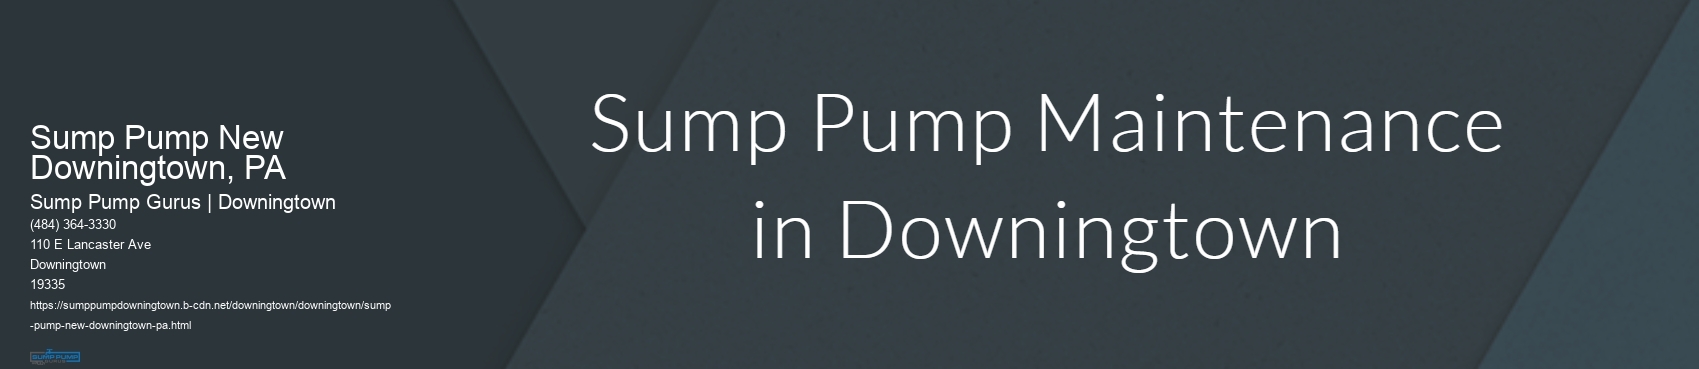 Sump Pump New Downingtown, PA